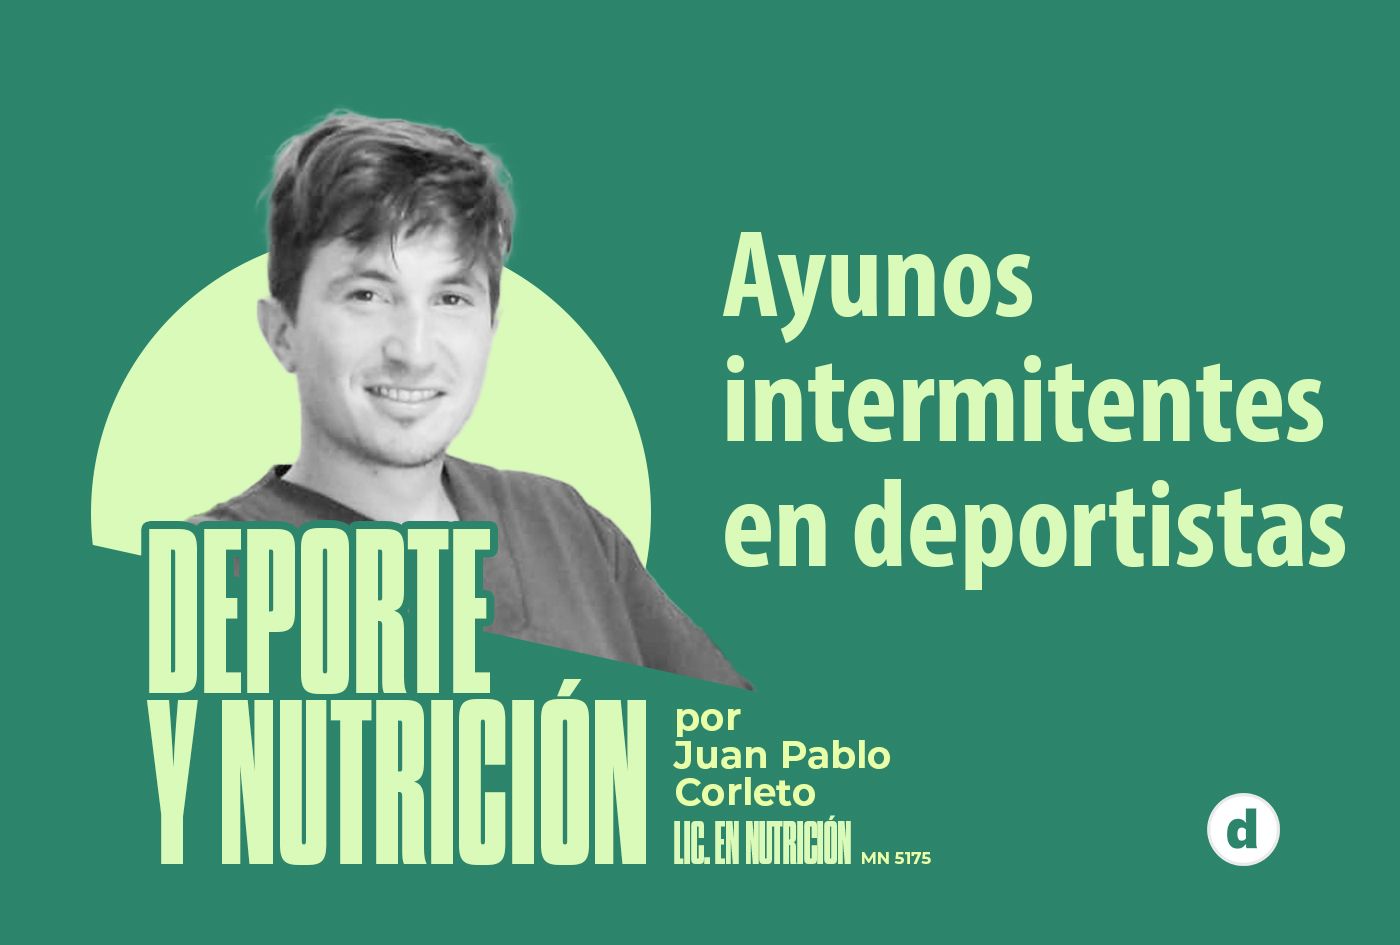 La columna del nutricionista Juan Pablo Corleto: “Ayunos intermitentes en deportistas”